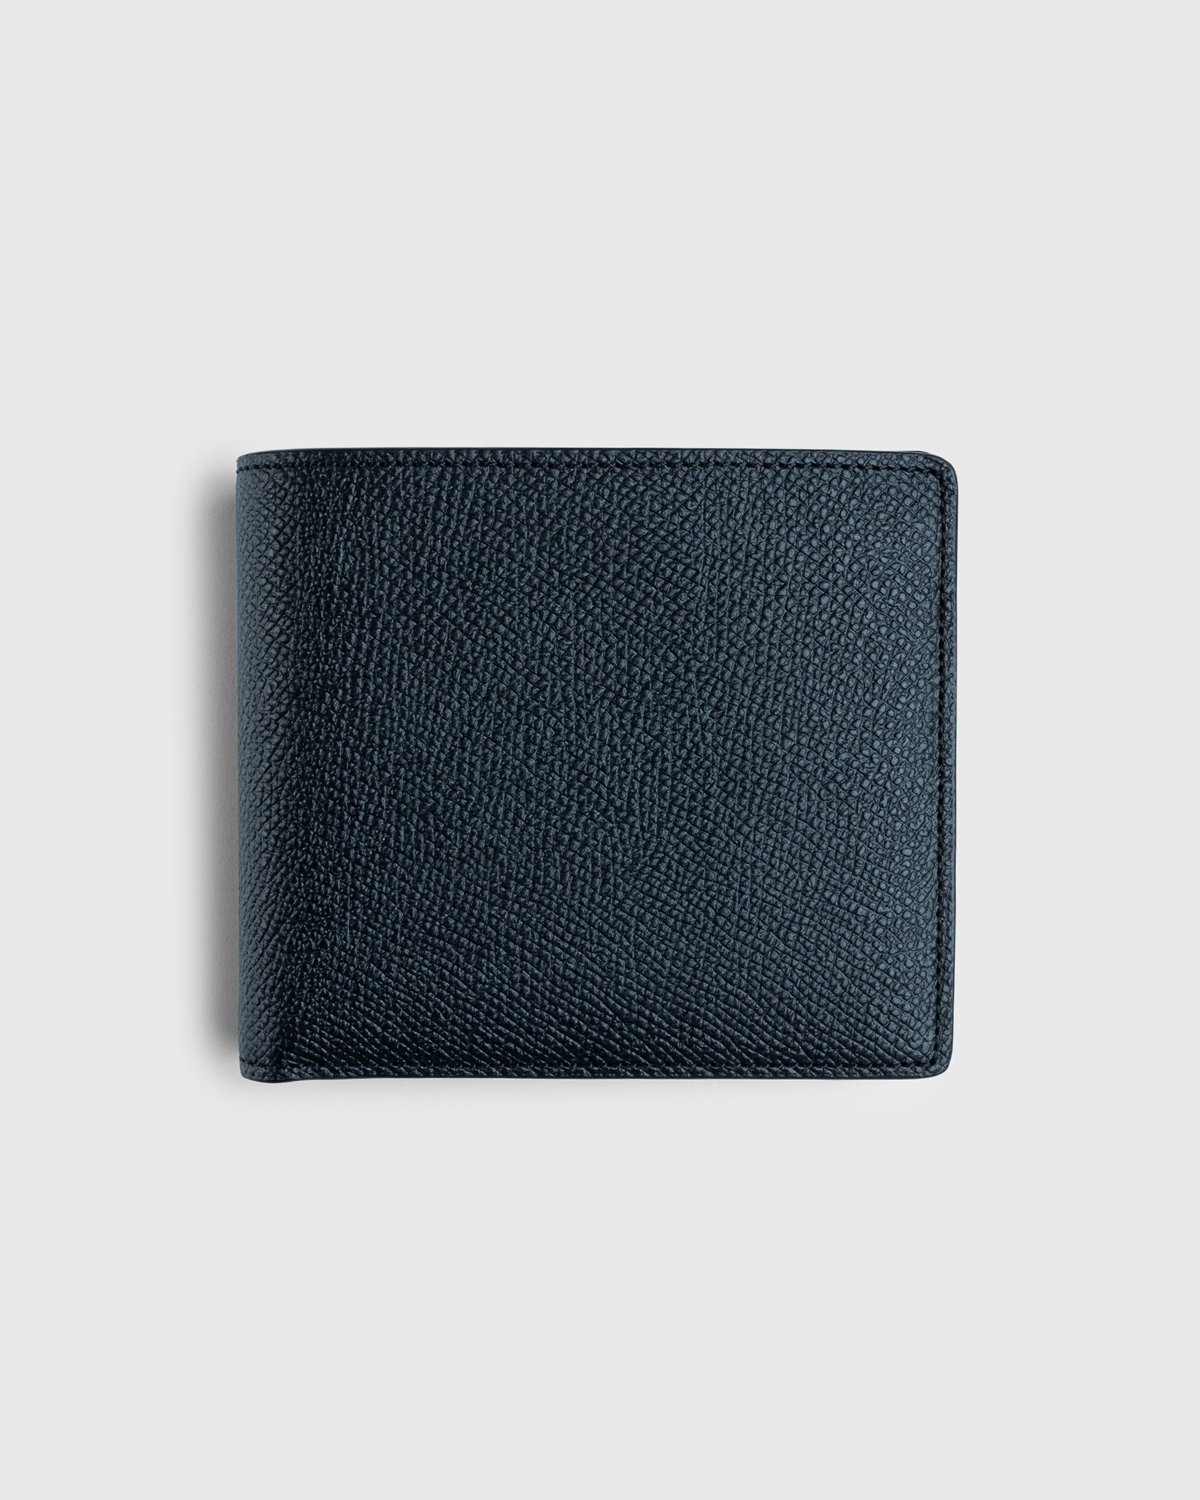 Maison Margiela - Leather Wallet Black - Accessories - Black - Image 2